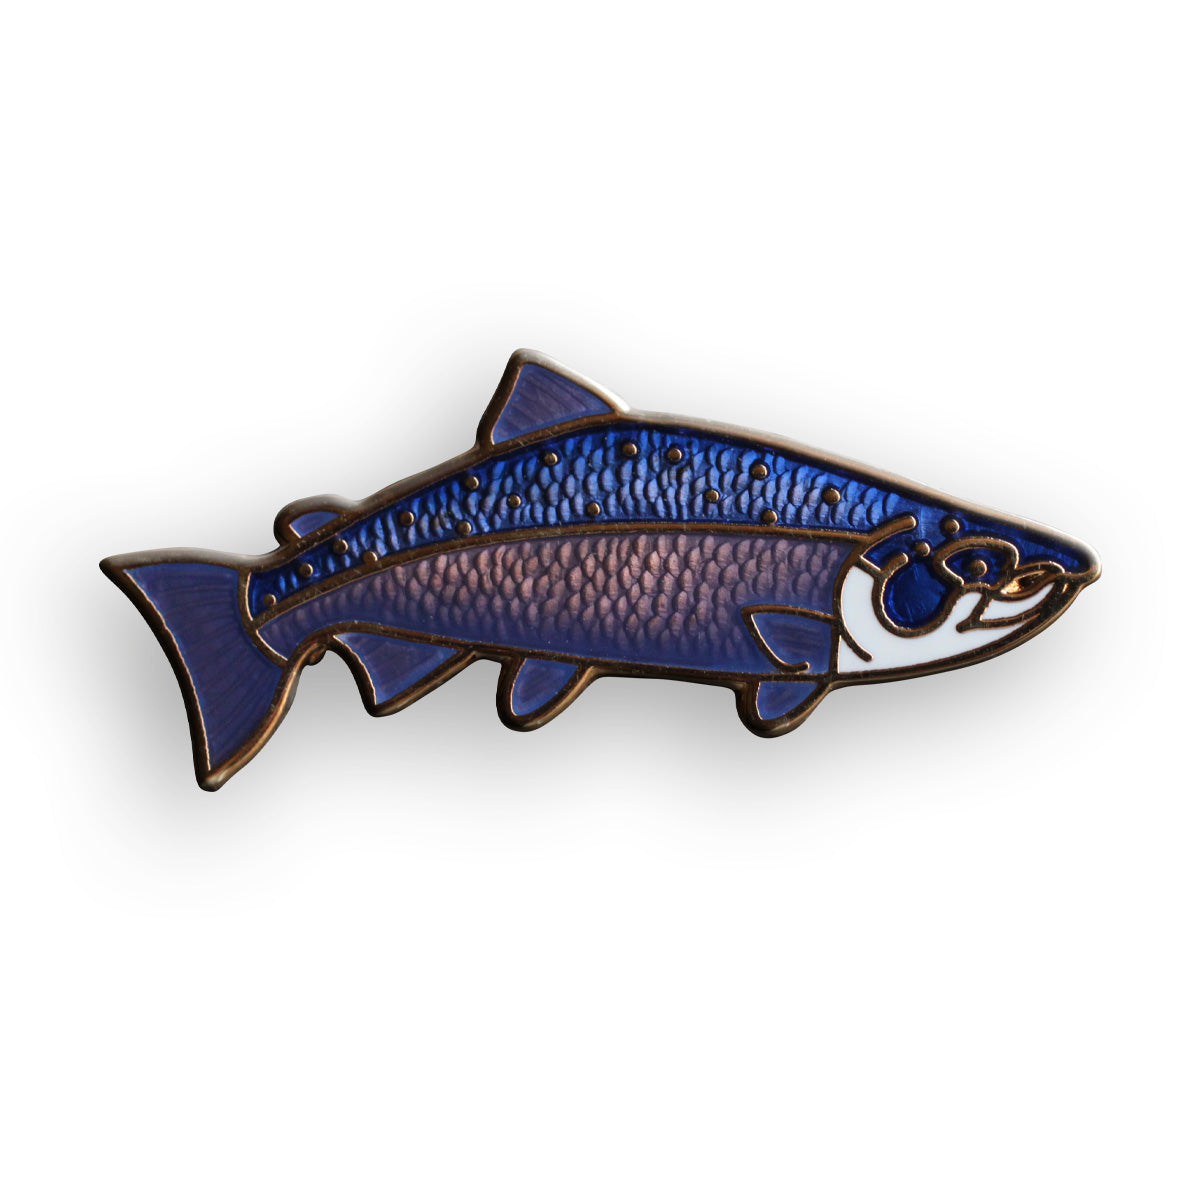 Coho Salmon – National Park Souvenirs